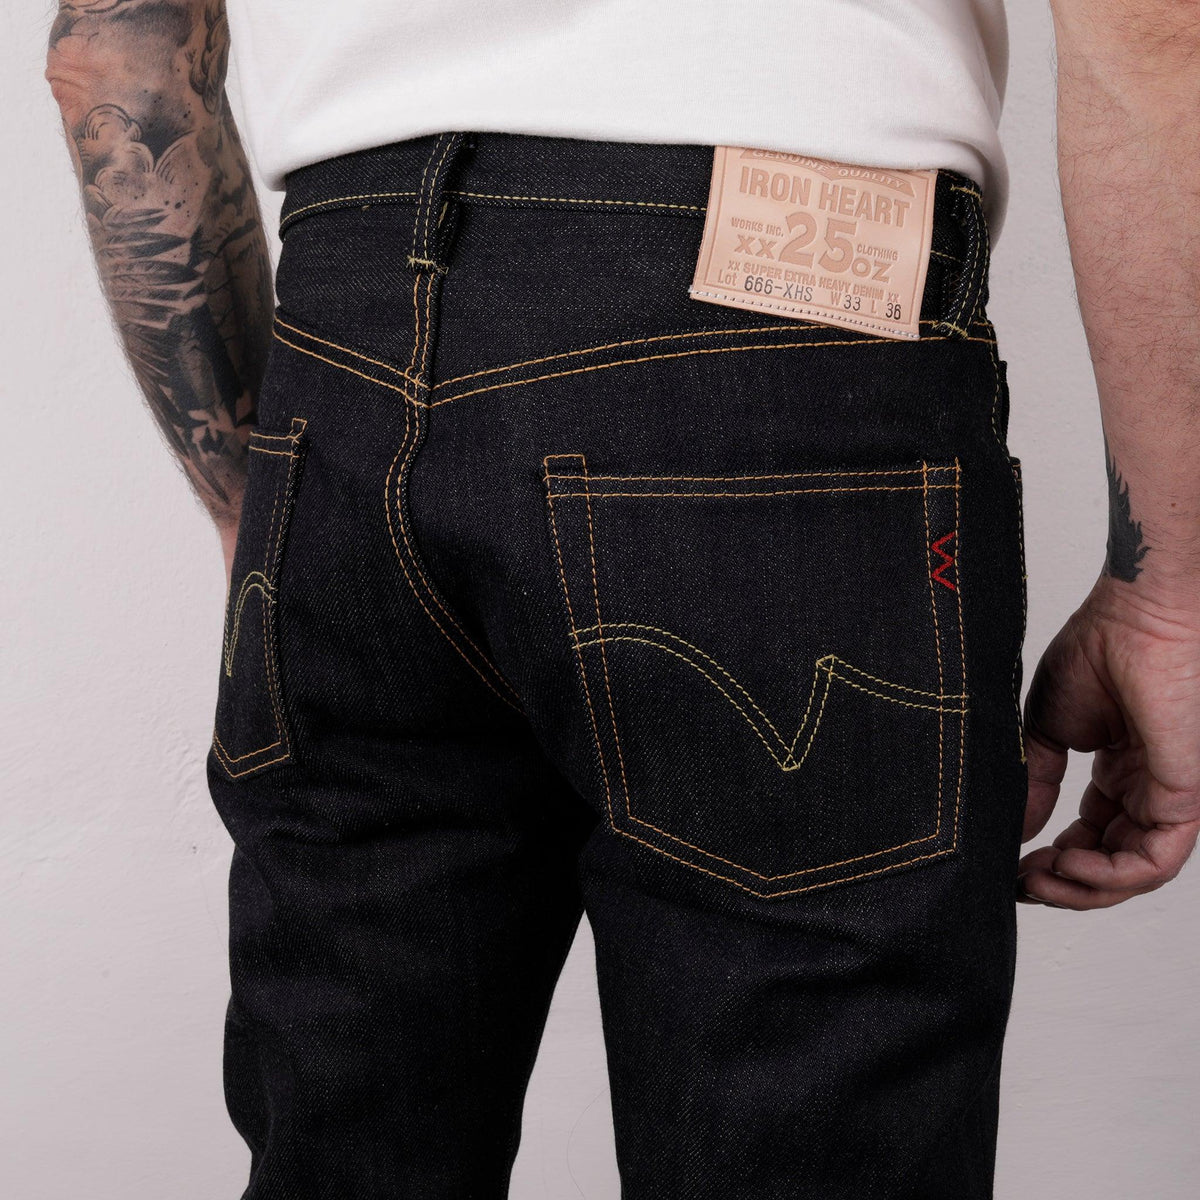 IH-666-XHS - 25oz Slim Straight Cut Jeans Indigo